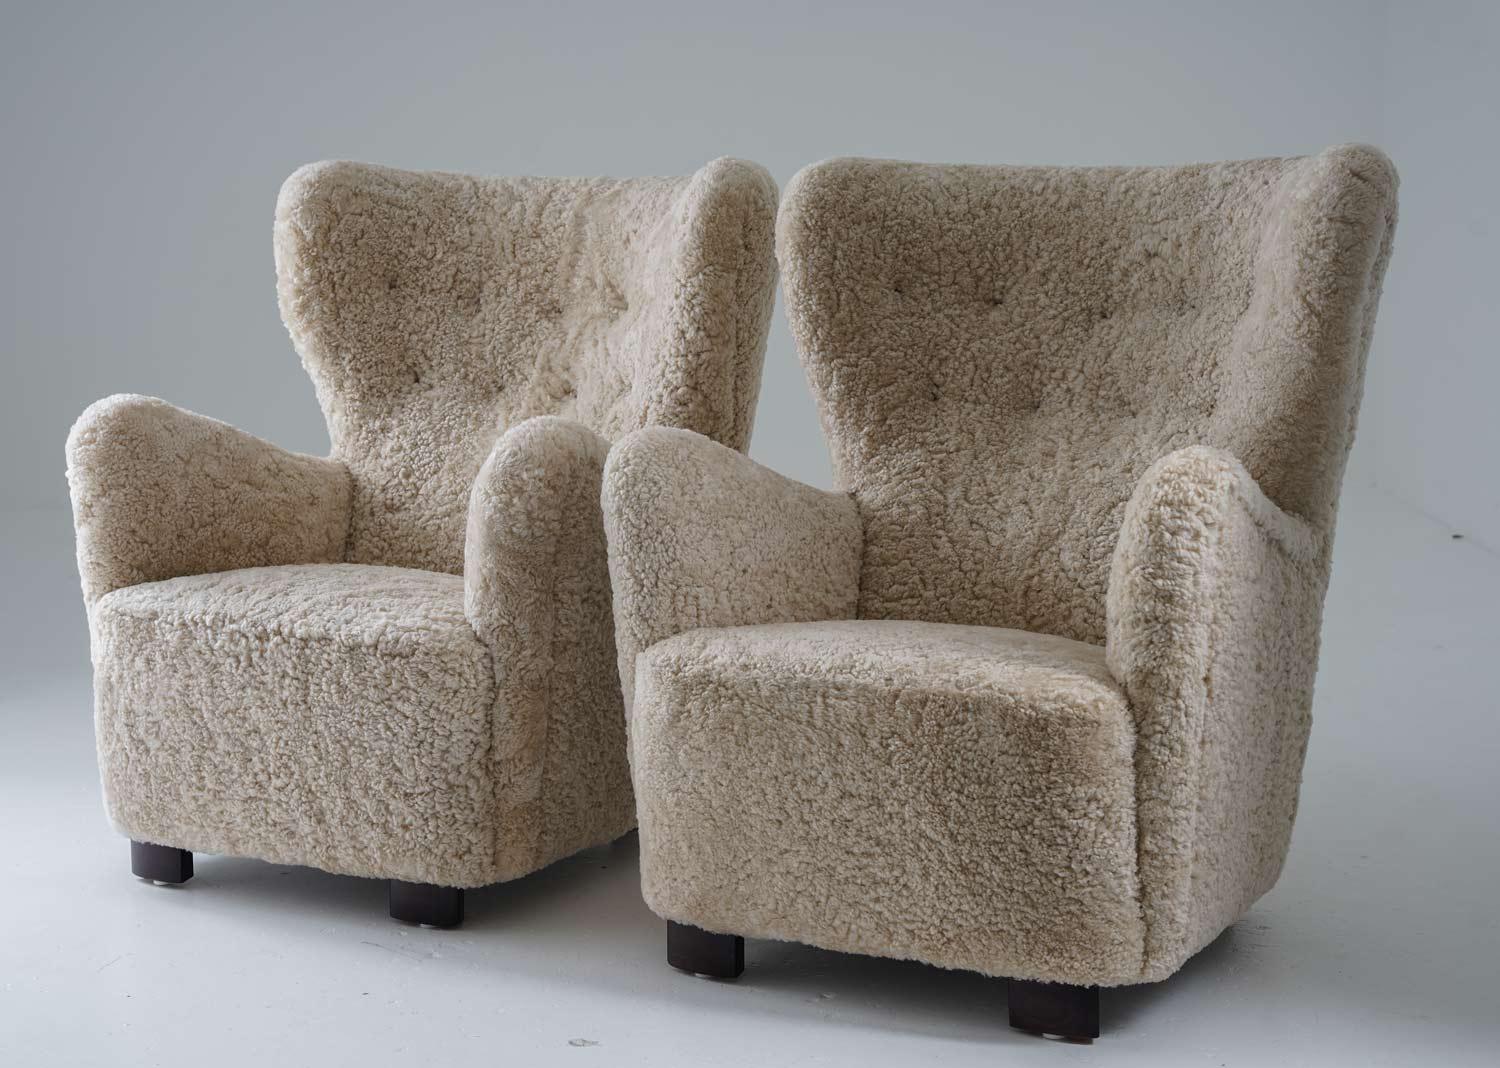 Paire de grandes chaises longues à haut dossier fabriquées au Danemark, années 1930. 
Ces chaises majestueuses vous entourent de leur dossier incurvé et sont tout aussi confortables qu'elles en ont l'air. 
Ils ont été recouverts de peau de mouton